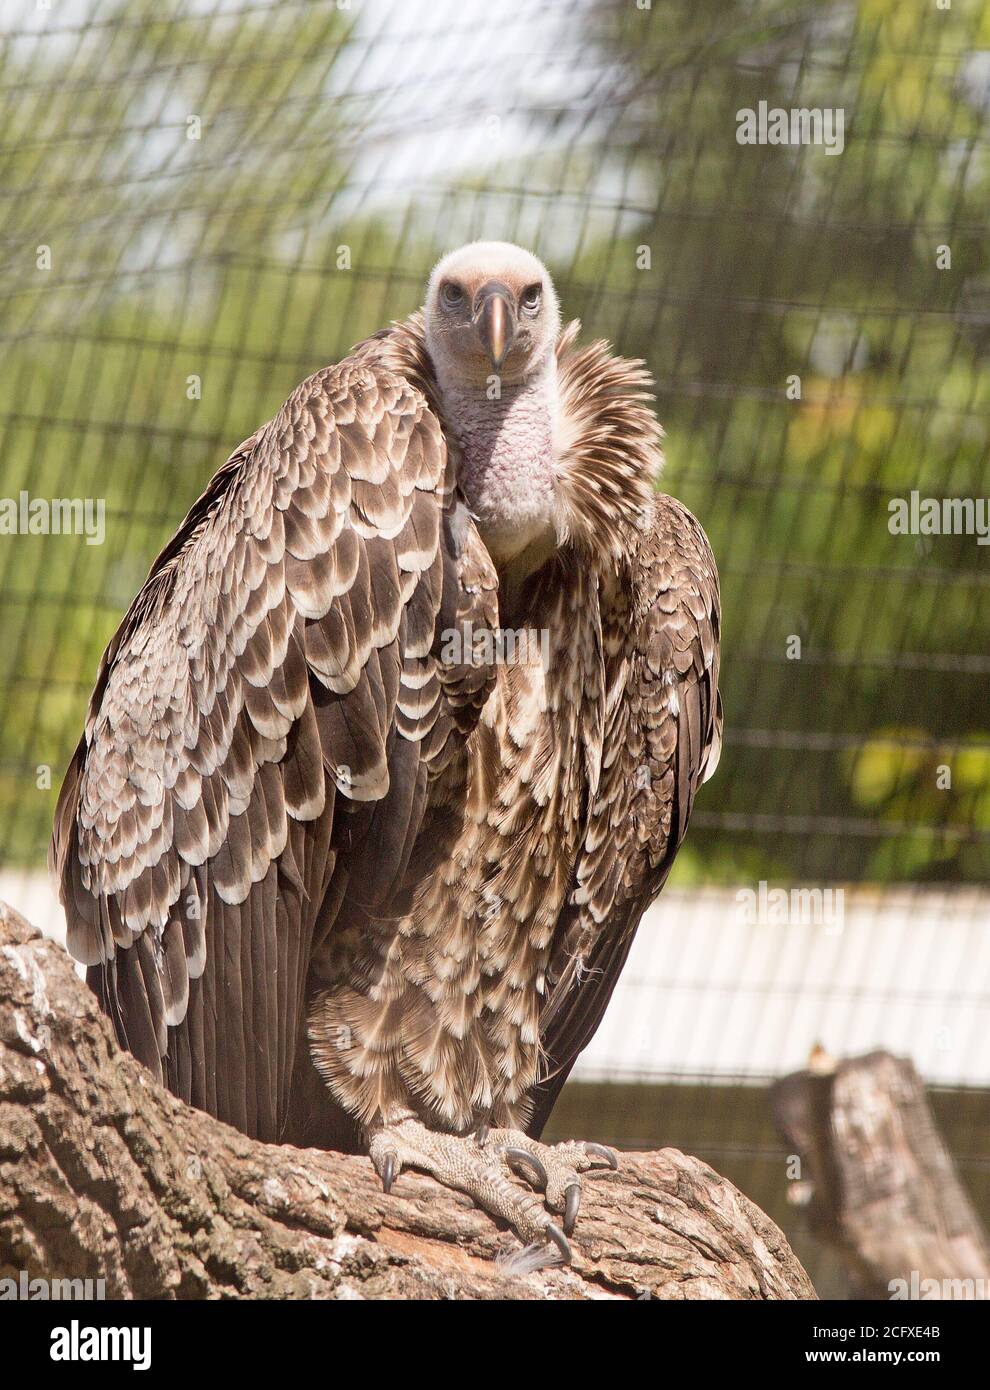 Griffon Vulture (Gyps fulvus) riposandosi su un tronco di legno in cattività che guarda direttamente in fotocamera Foto Stock